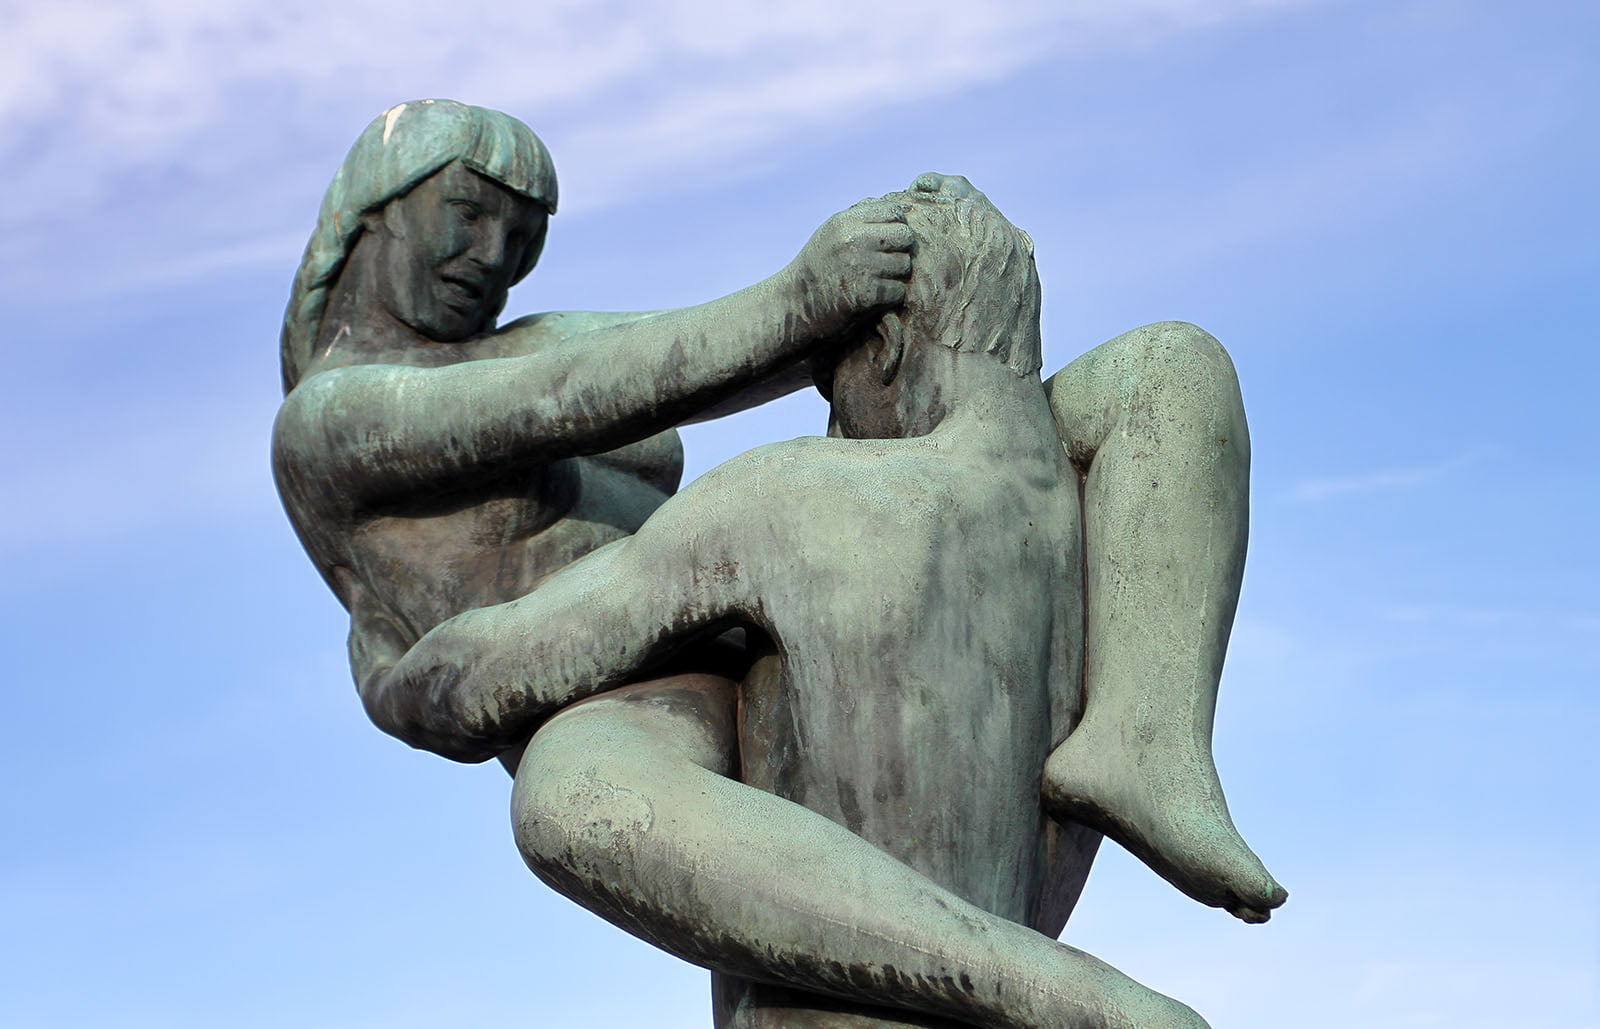 Body sculptures in Oslo, Norway